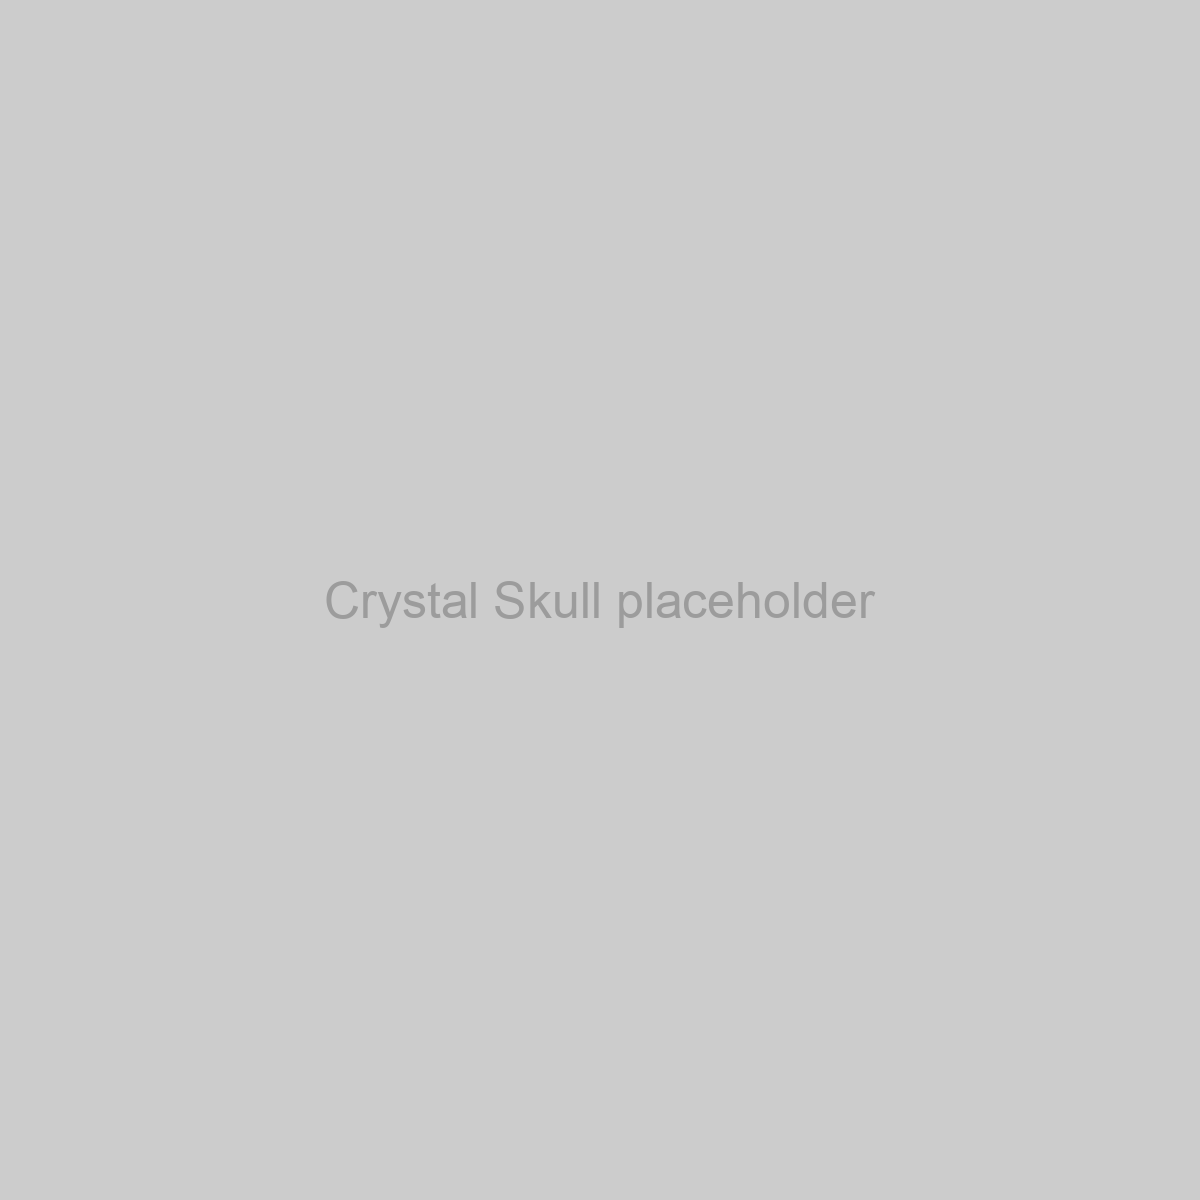 Crystal Skull Placeholder Image